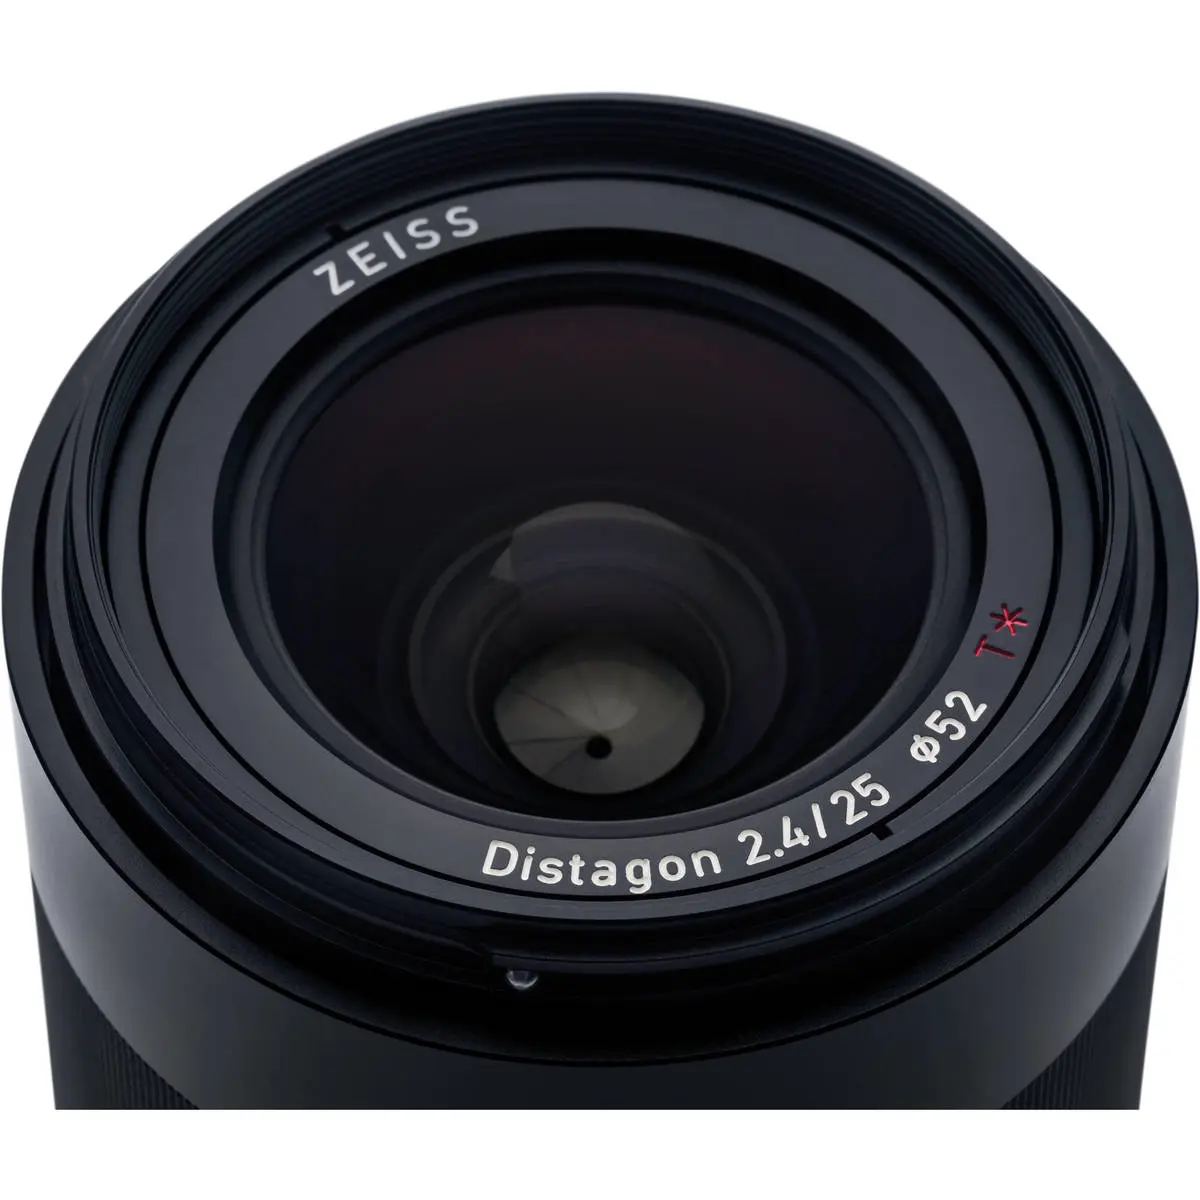 13. Carl Zeiss Loxia 2.4/25 (Sony FE) Lens